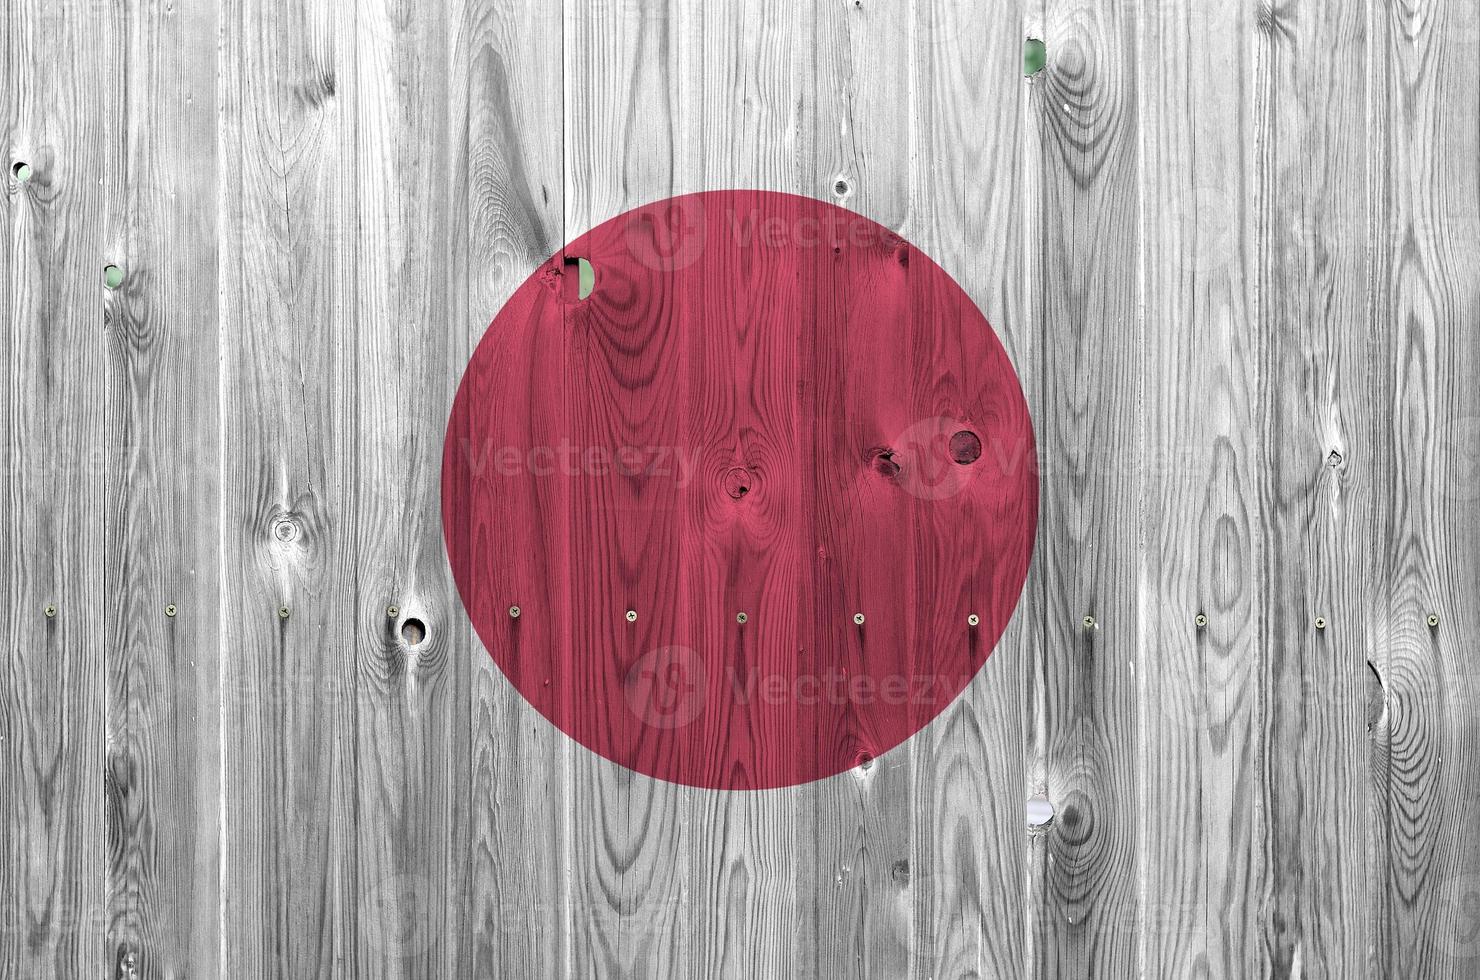 bandeira do japão retratada em cores brilhantes de tinta na parede de madeira velha. banner texturizado em fundo áspero foto